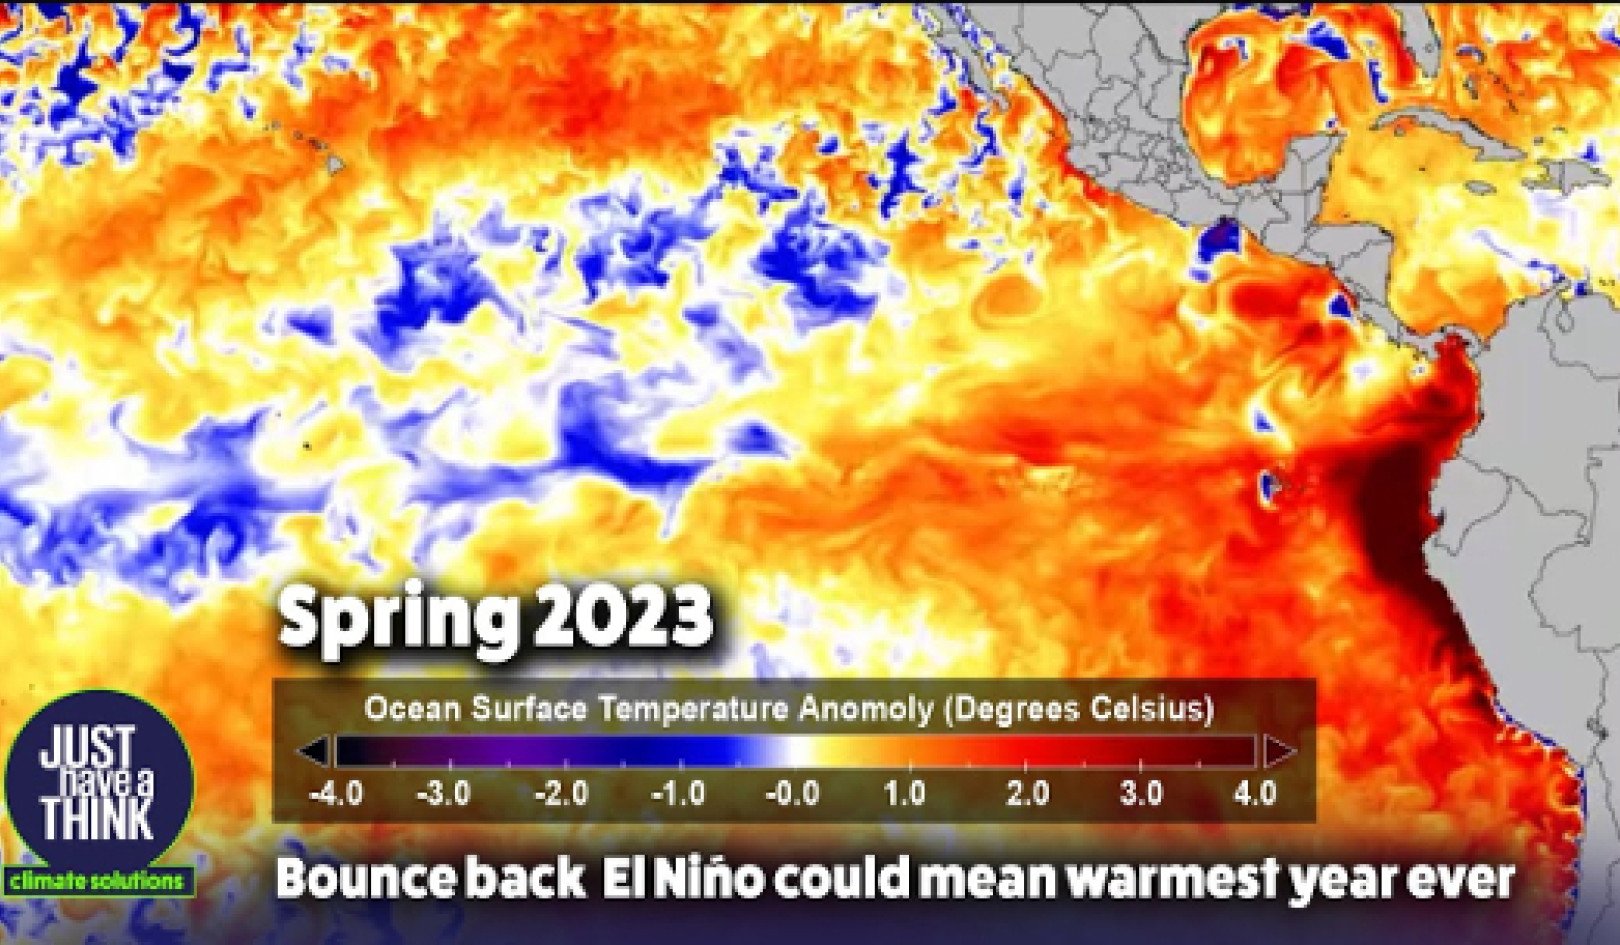 El Niñon arvaamaton luonto: sen vaikutuksen ymmärtäminen maailmanlaajuisiin sääkuvioihin